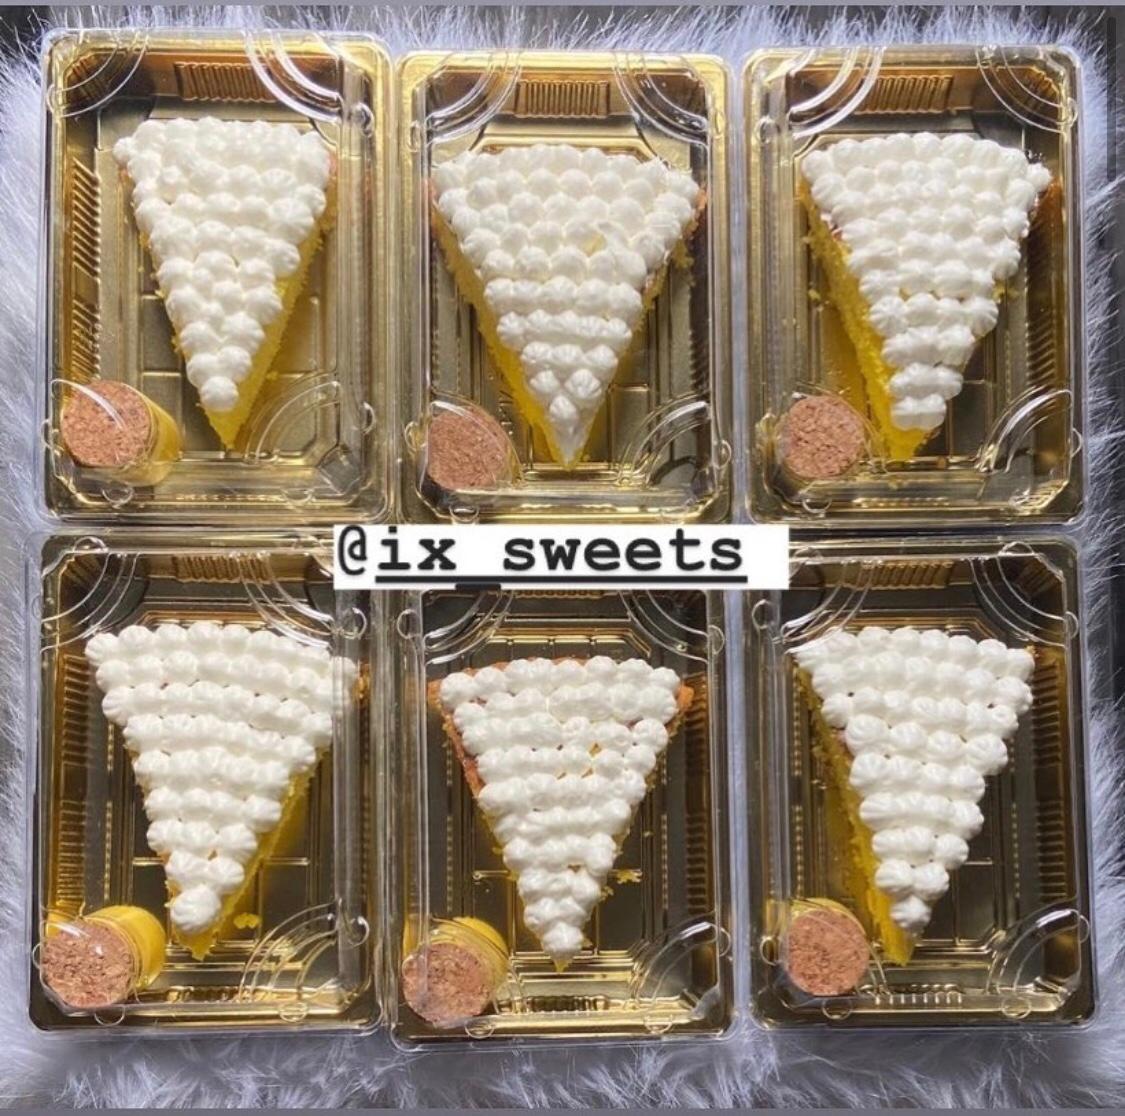 ix_sweets